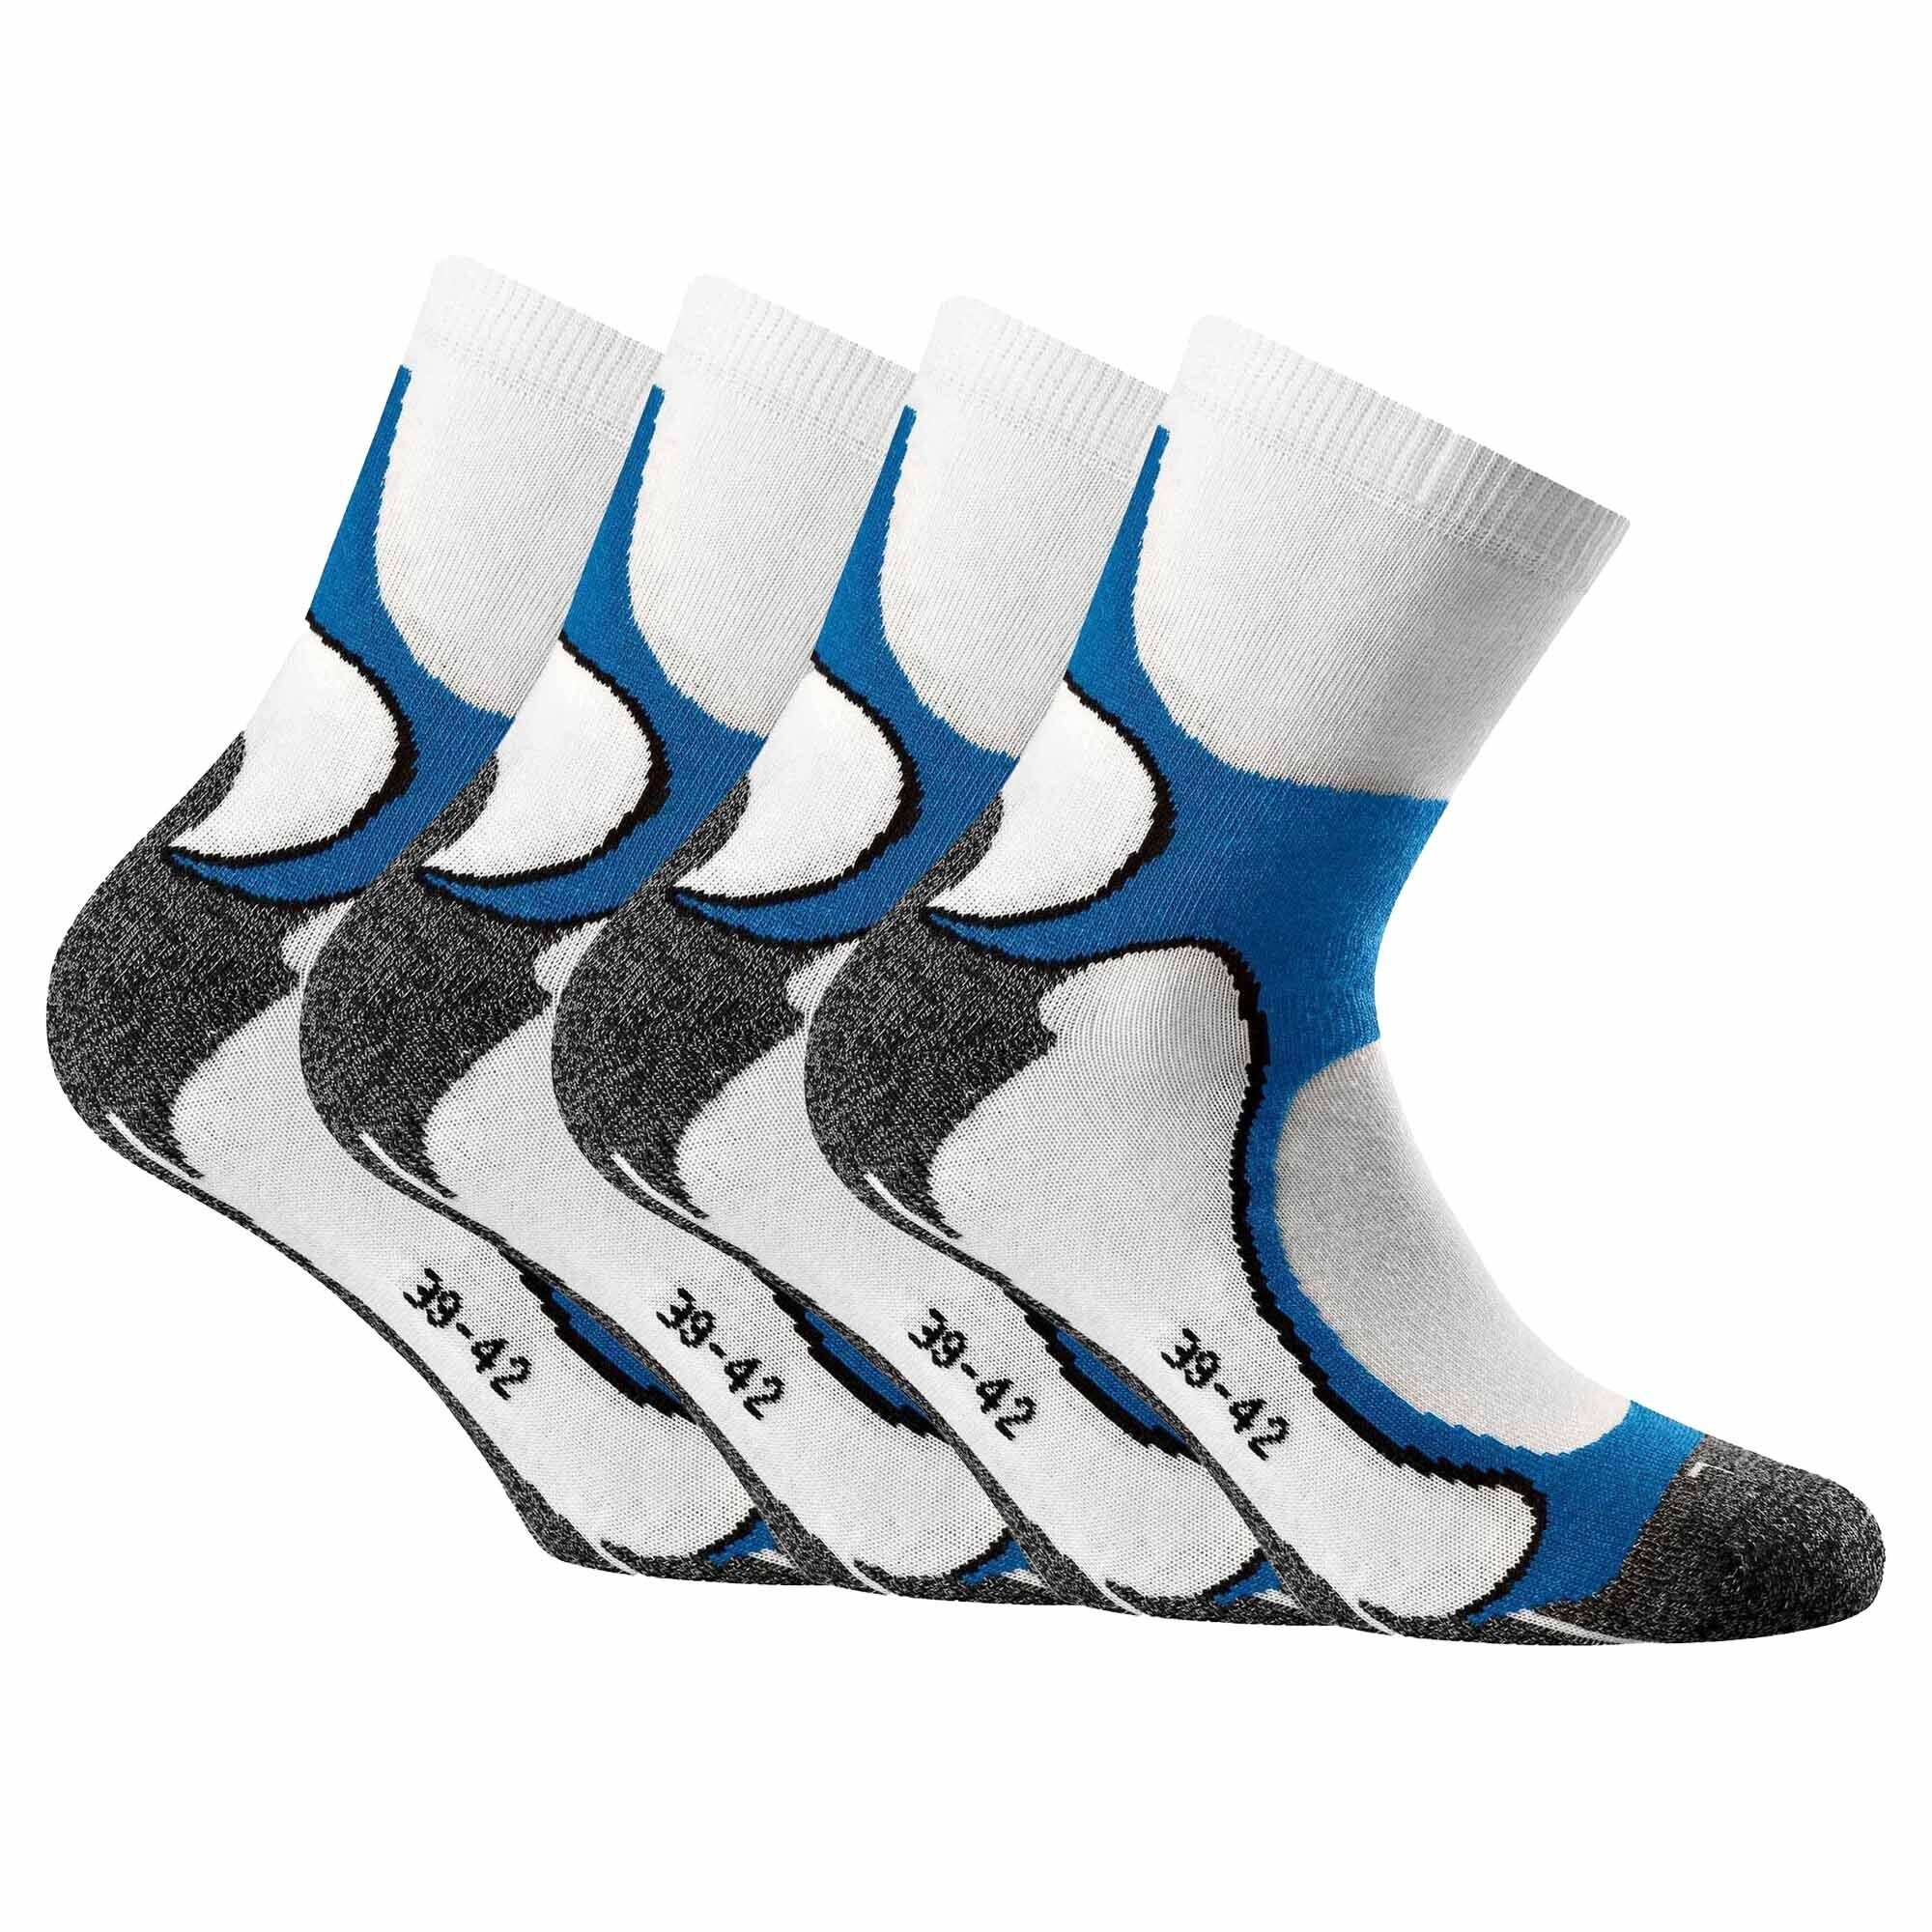 Rohner Socks Sportsocken Unisex Running Quarter Socken, 4er Pack - Weiß/Blau